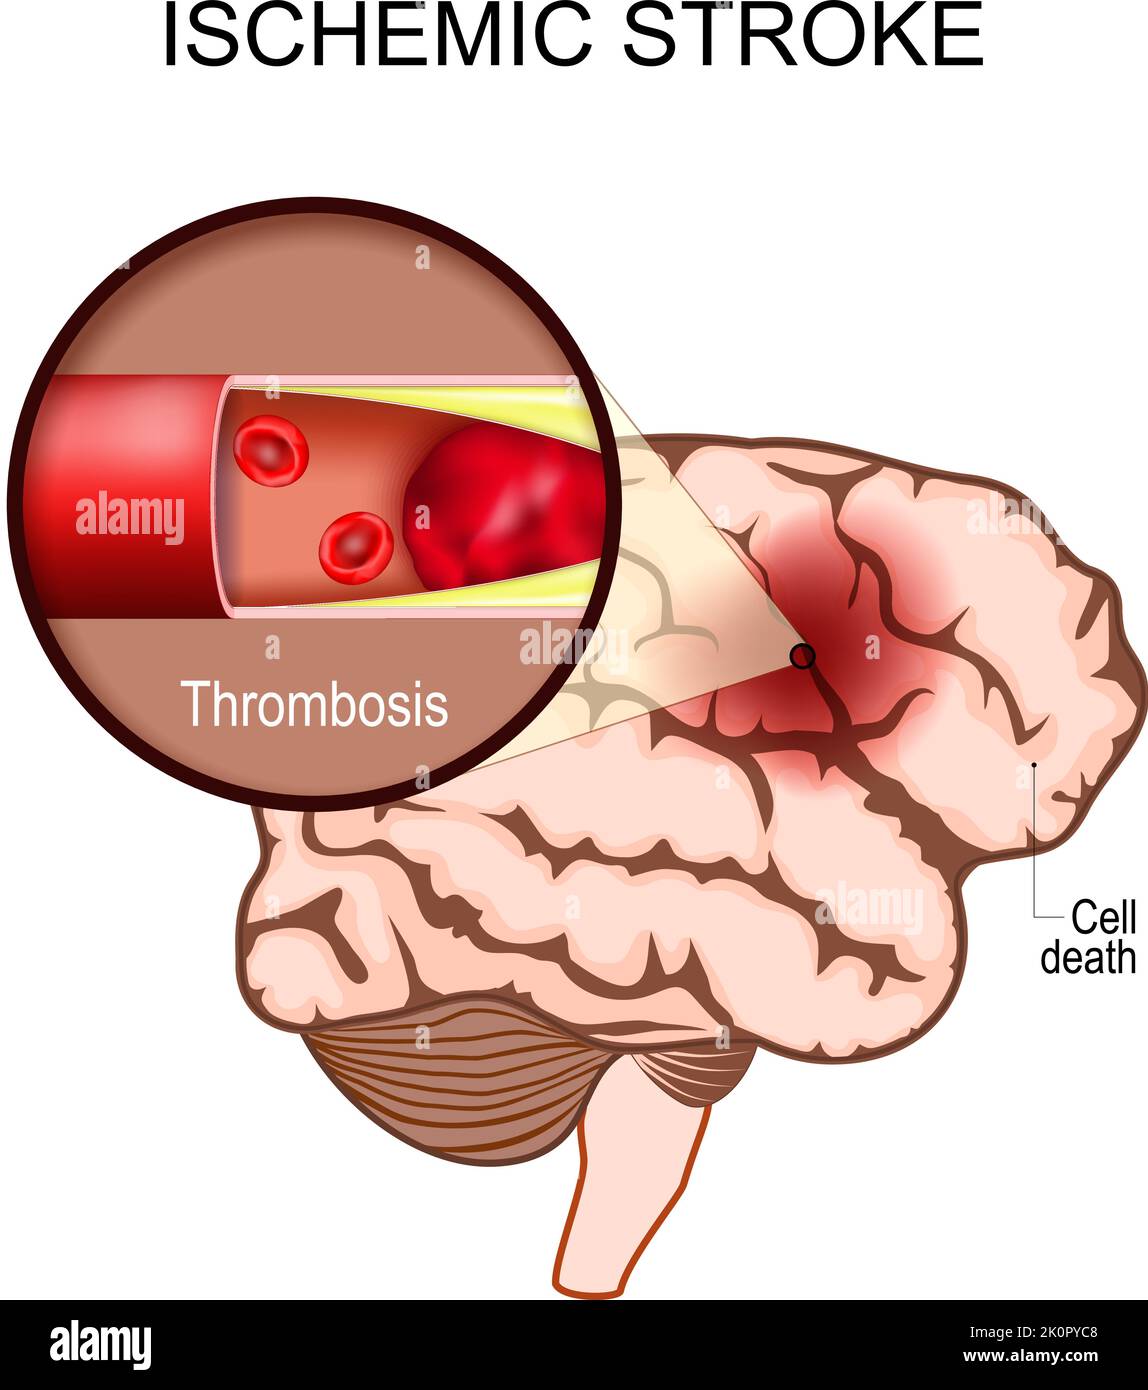 accidente cerebrovascular isquémico. Cerebro humano. Primer plano de un coágulo de sangre en una arteria que provoca la muerte cerebral en el área afectada. Trombosis. Infarto cerebral Ilustración del Vector